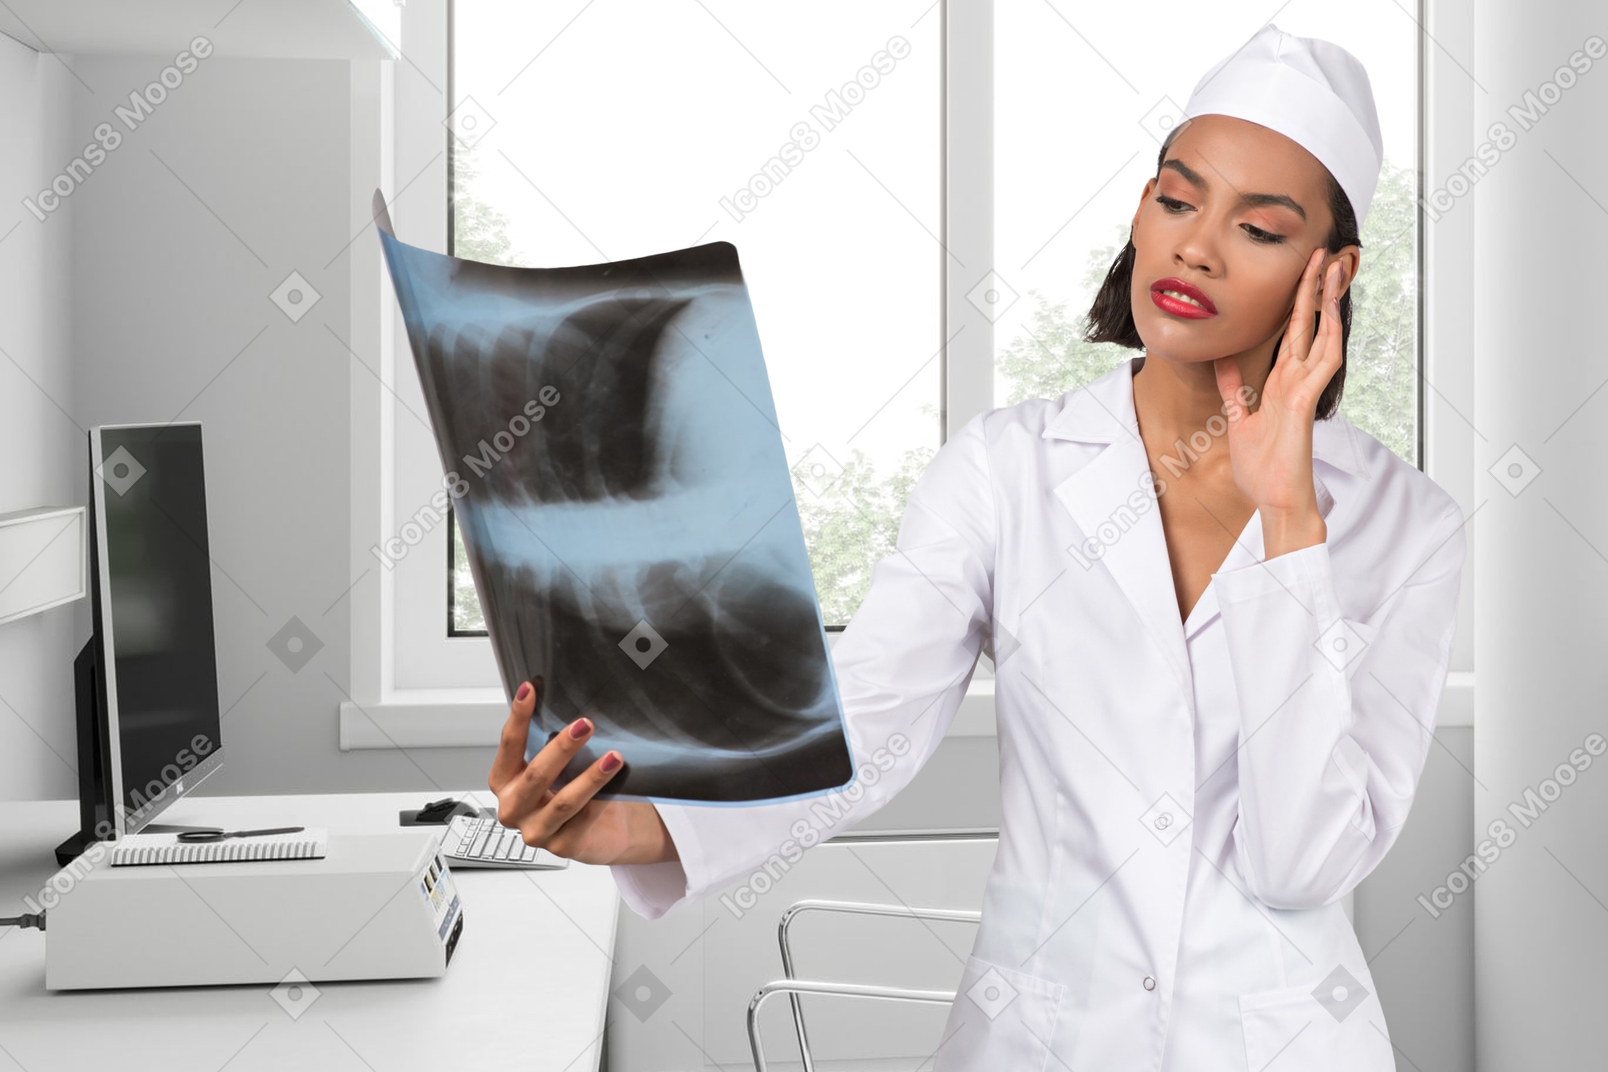 엑스레이 이미지를 보고 있는 여성 의사